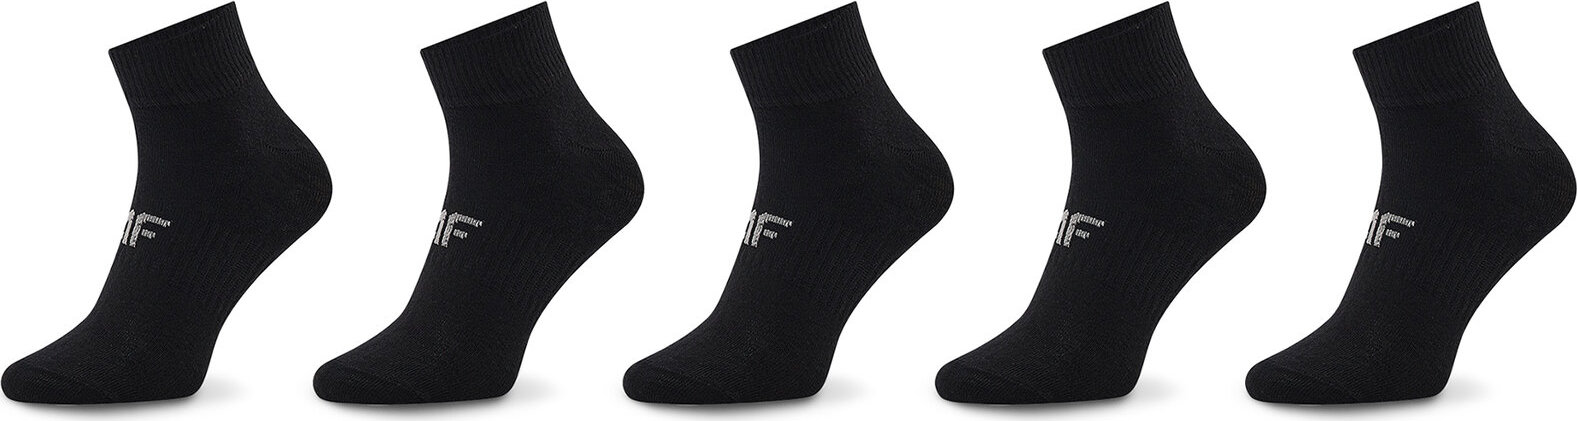 Sada 5 párů dámských nízkých ponožek 4F 4FAW22-USOCF076 20S